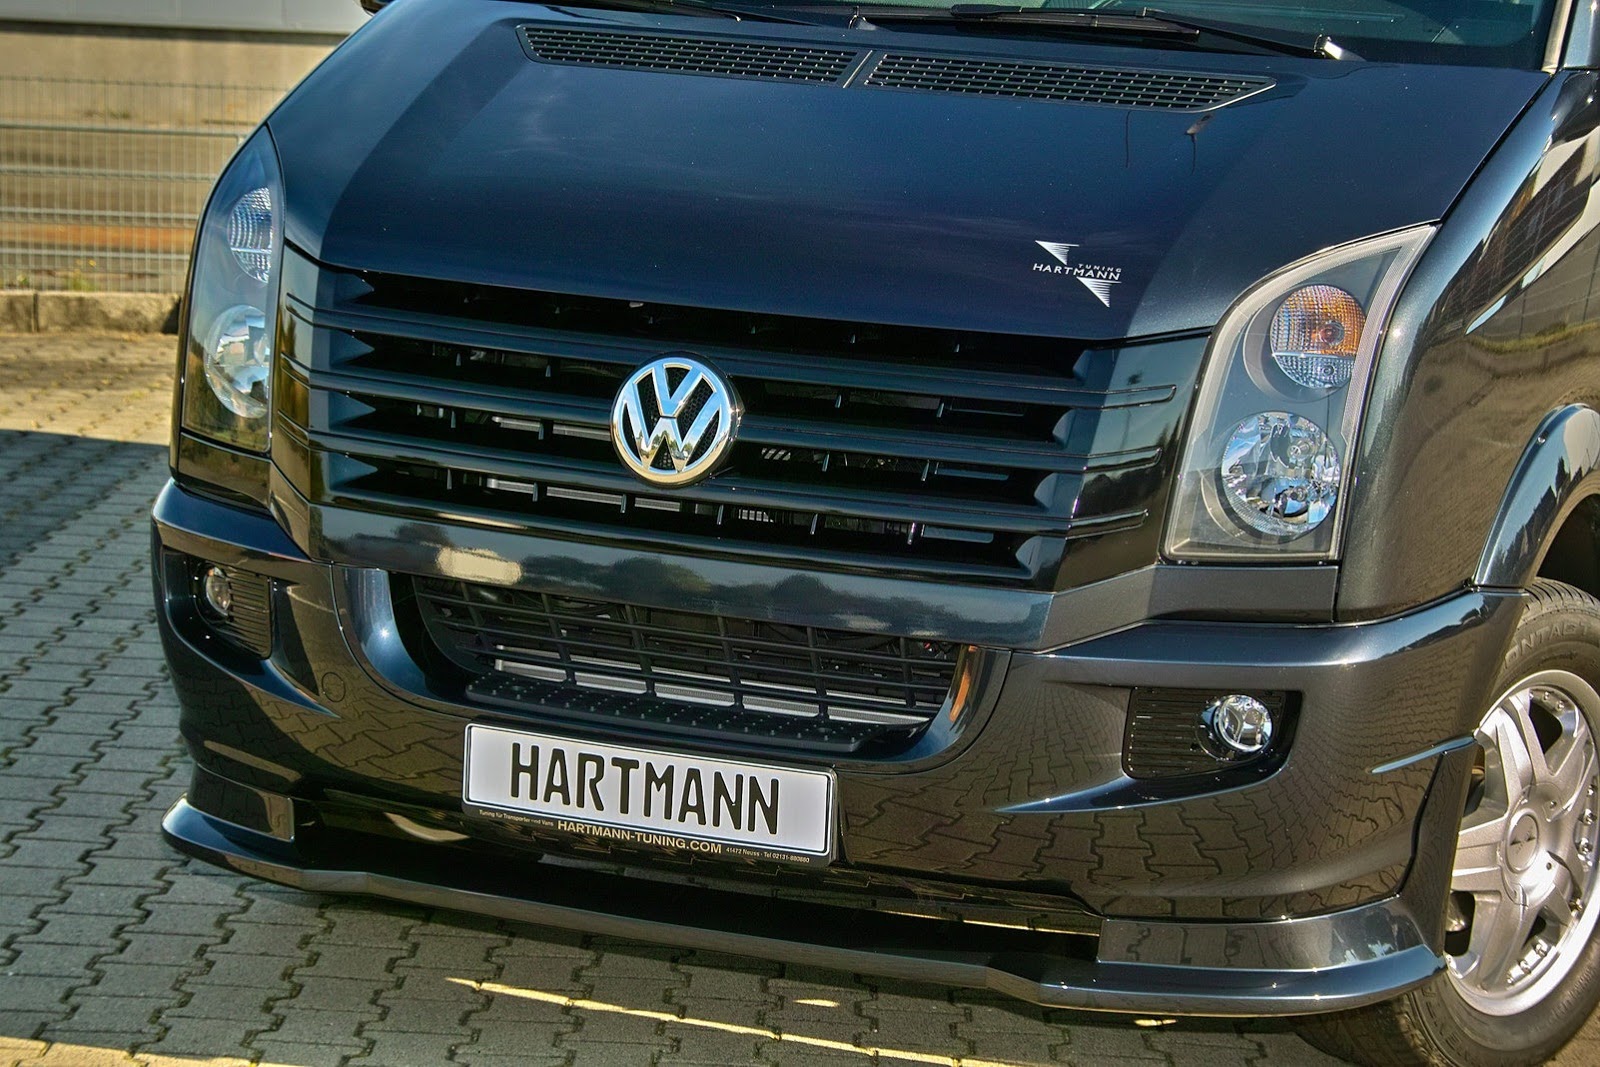 Hartmann Volkswagen Crafter